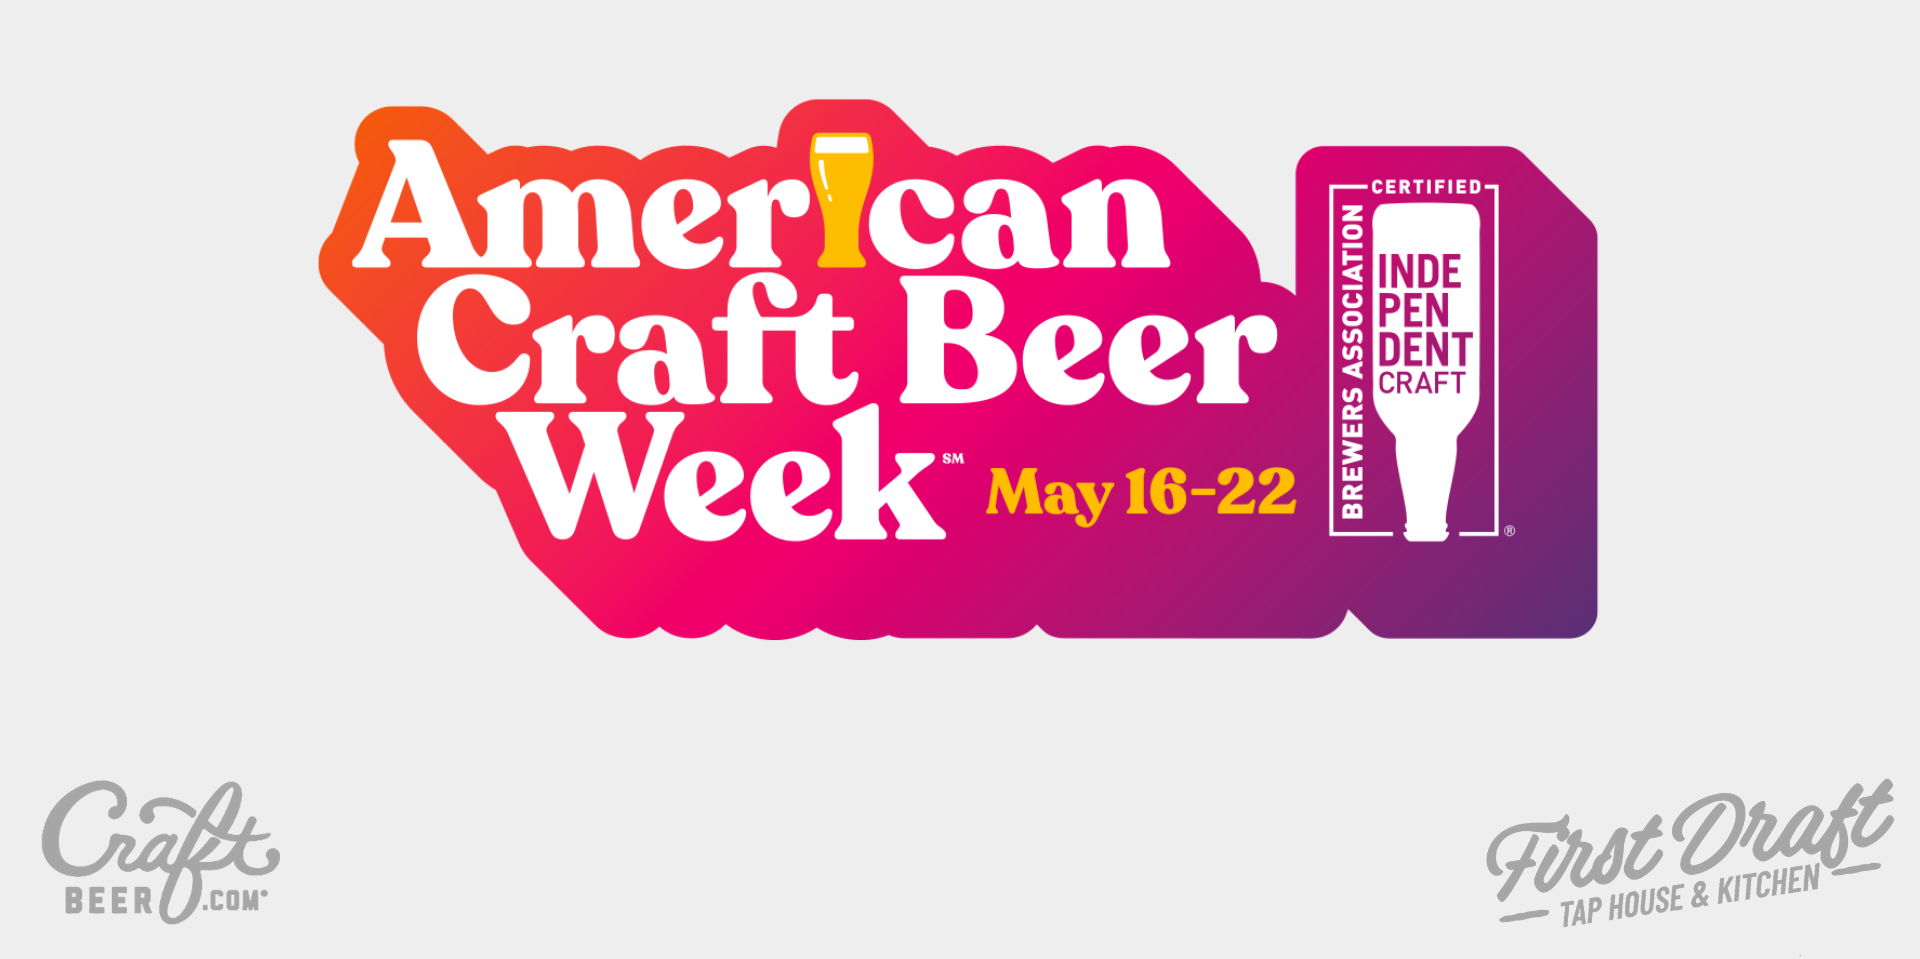 Craft Beer Week! promotional image